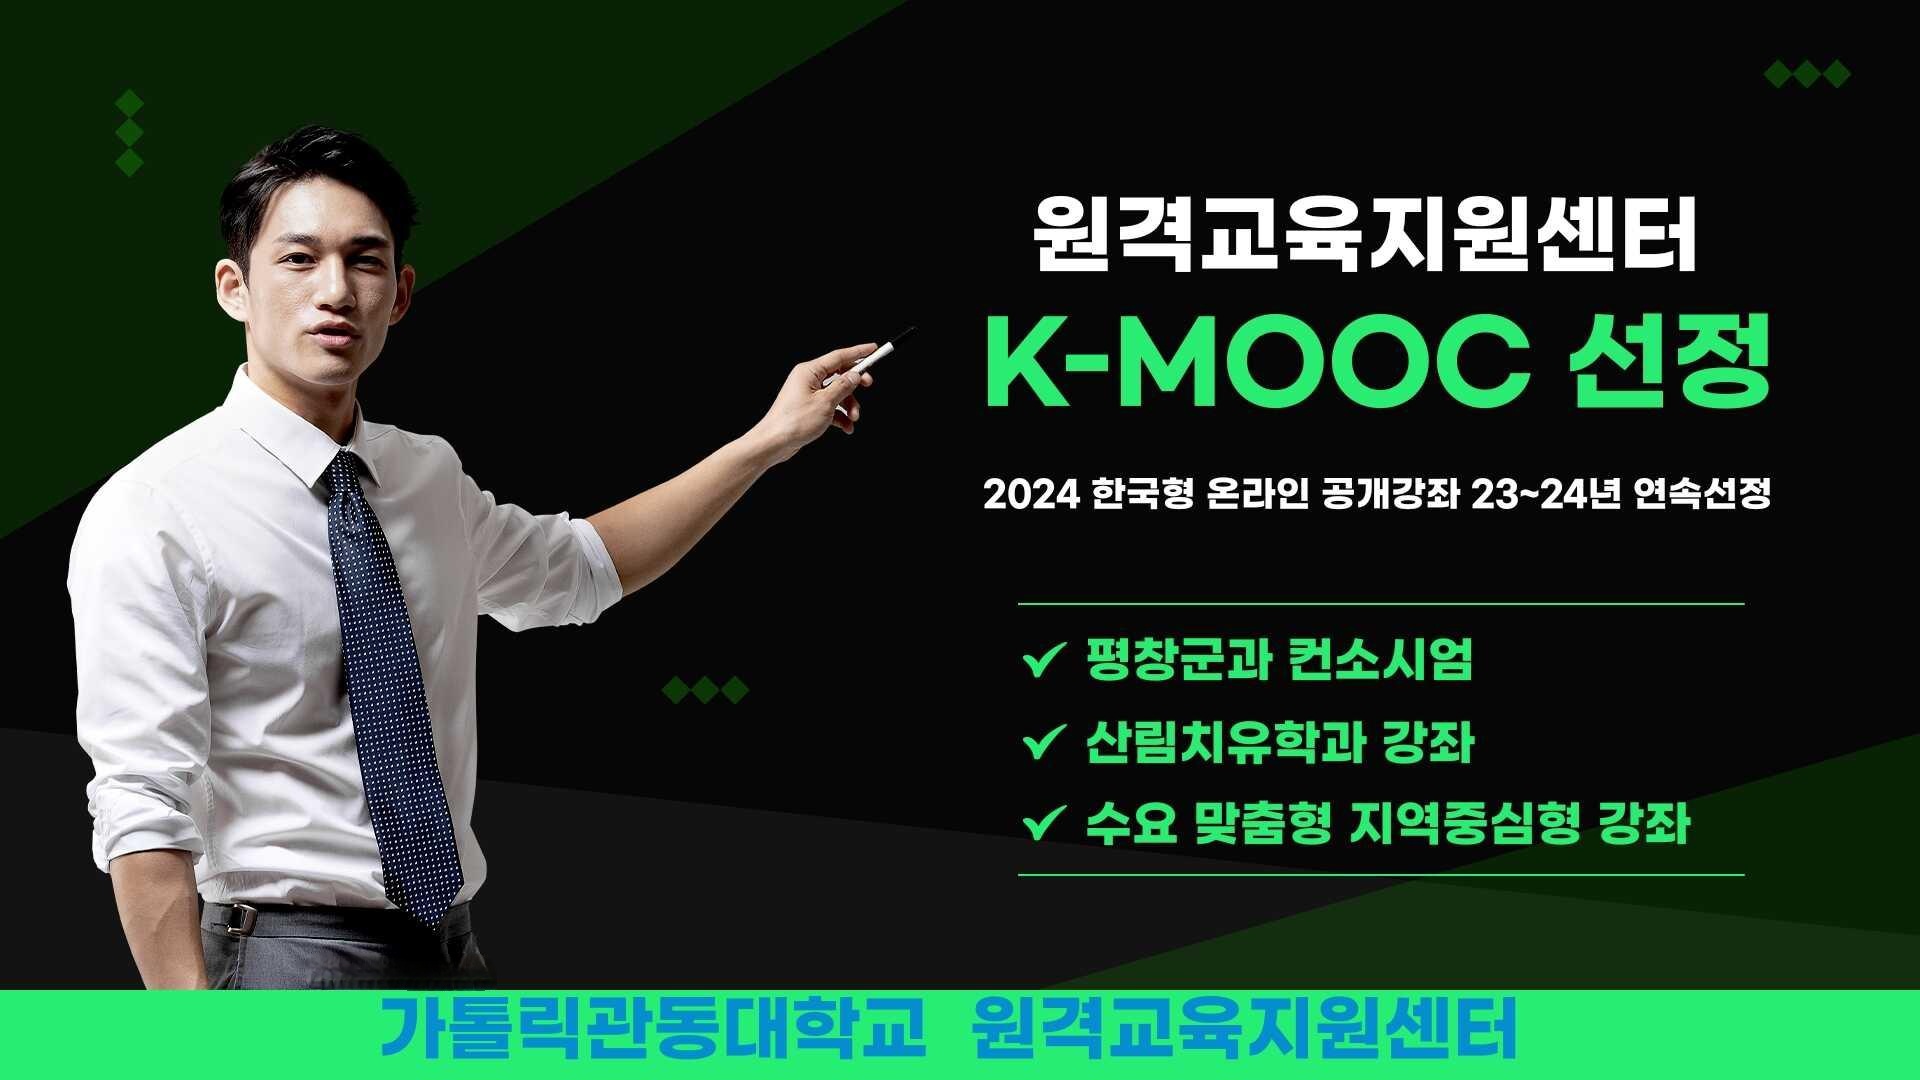  원격교육지원센터, 2023년에 이어 2024년 한국형 온라인 공개강좌(K-MOOC)에 연속 선정  대표이미지